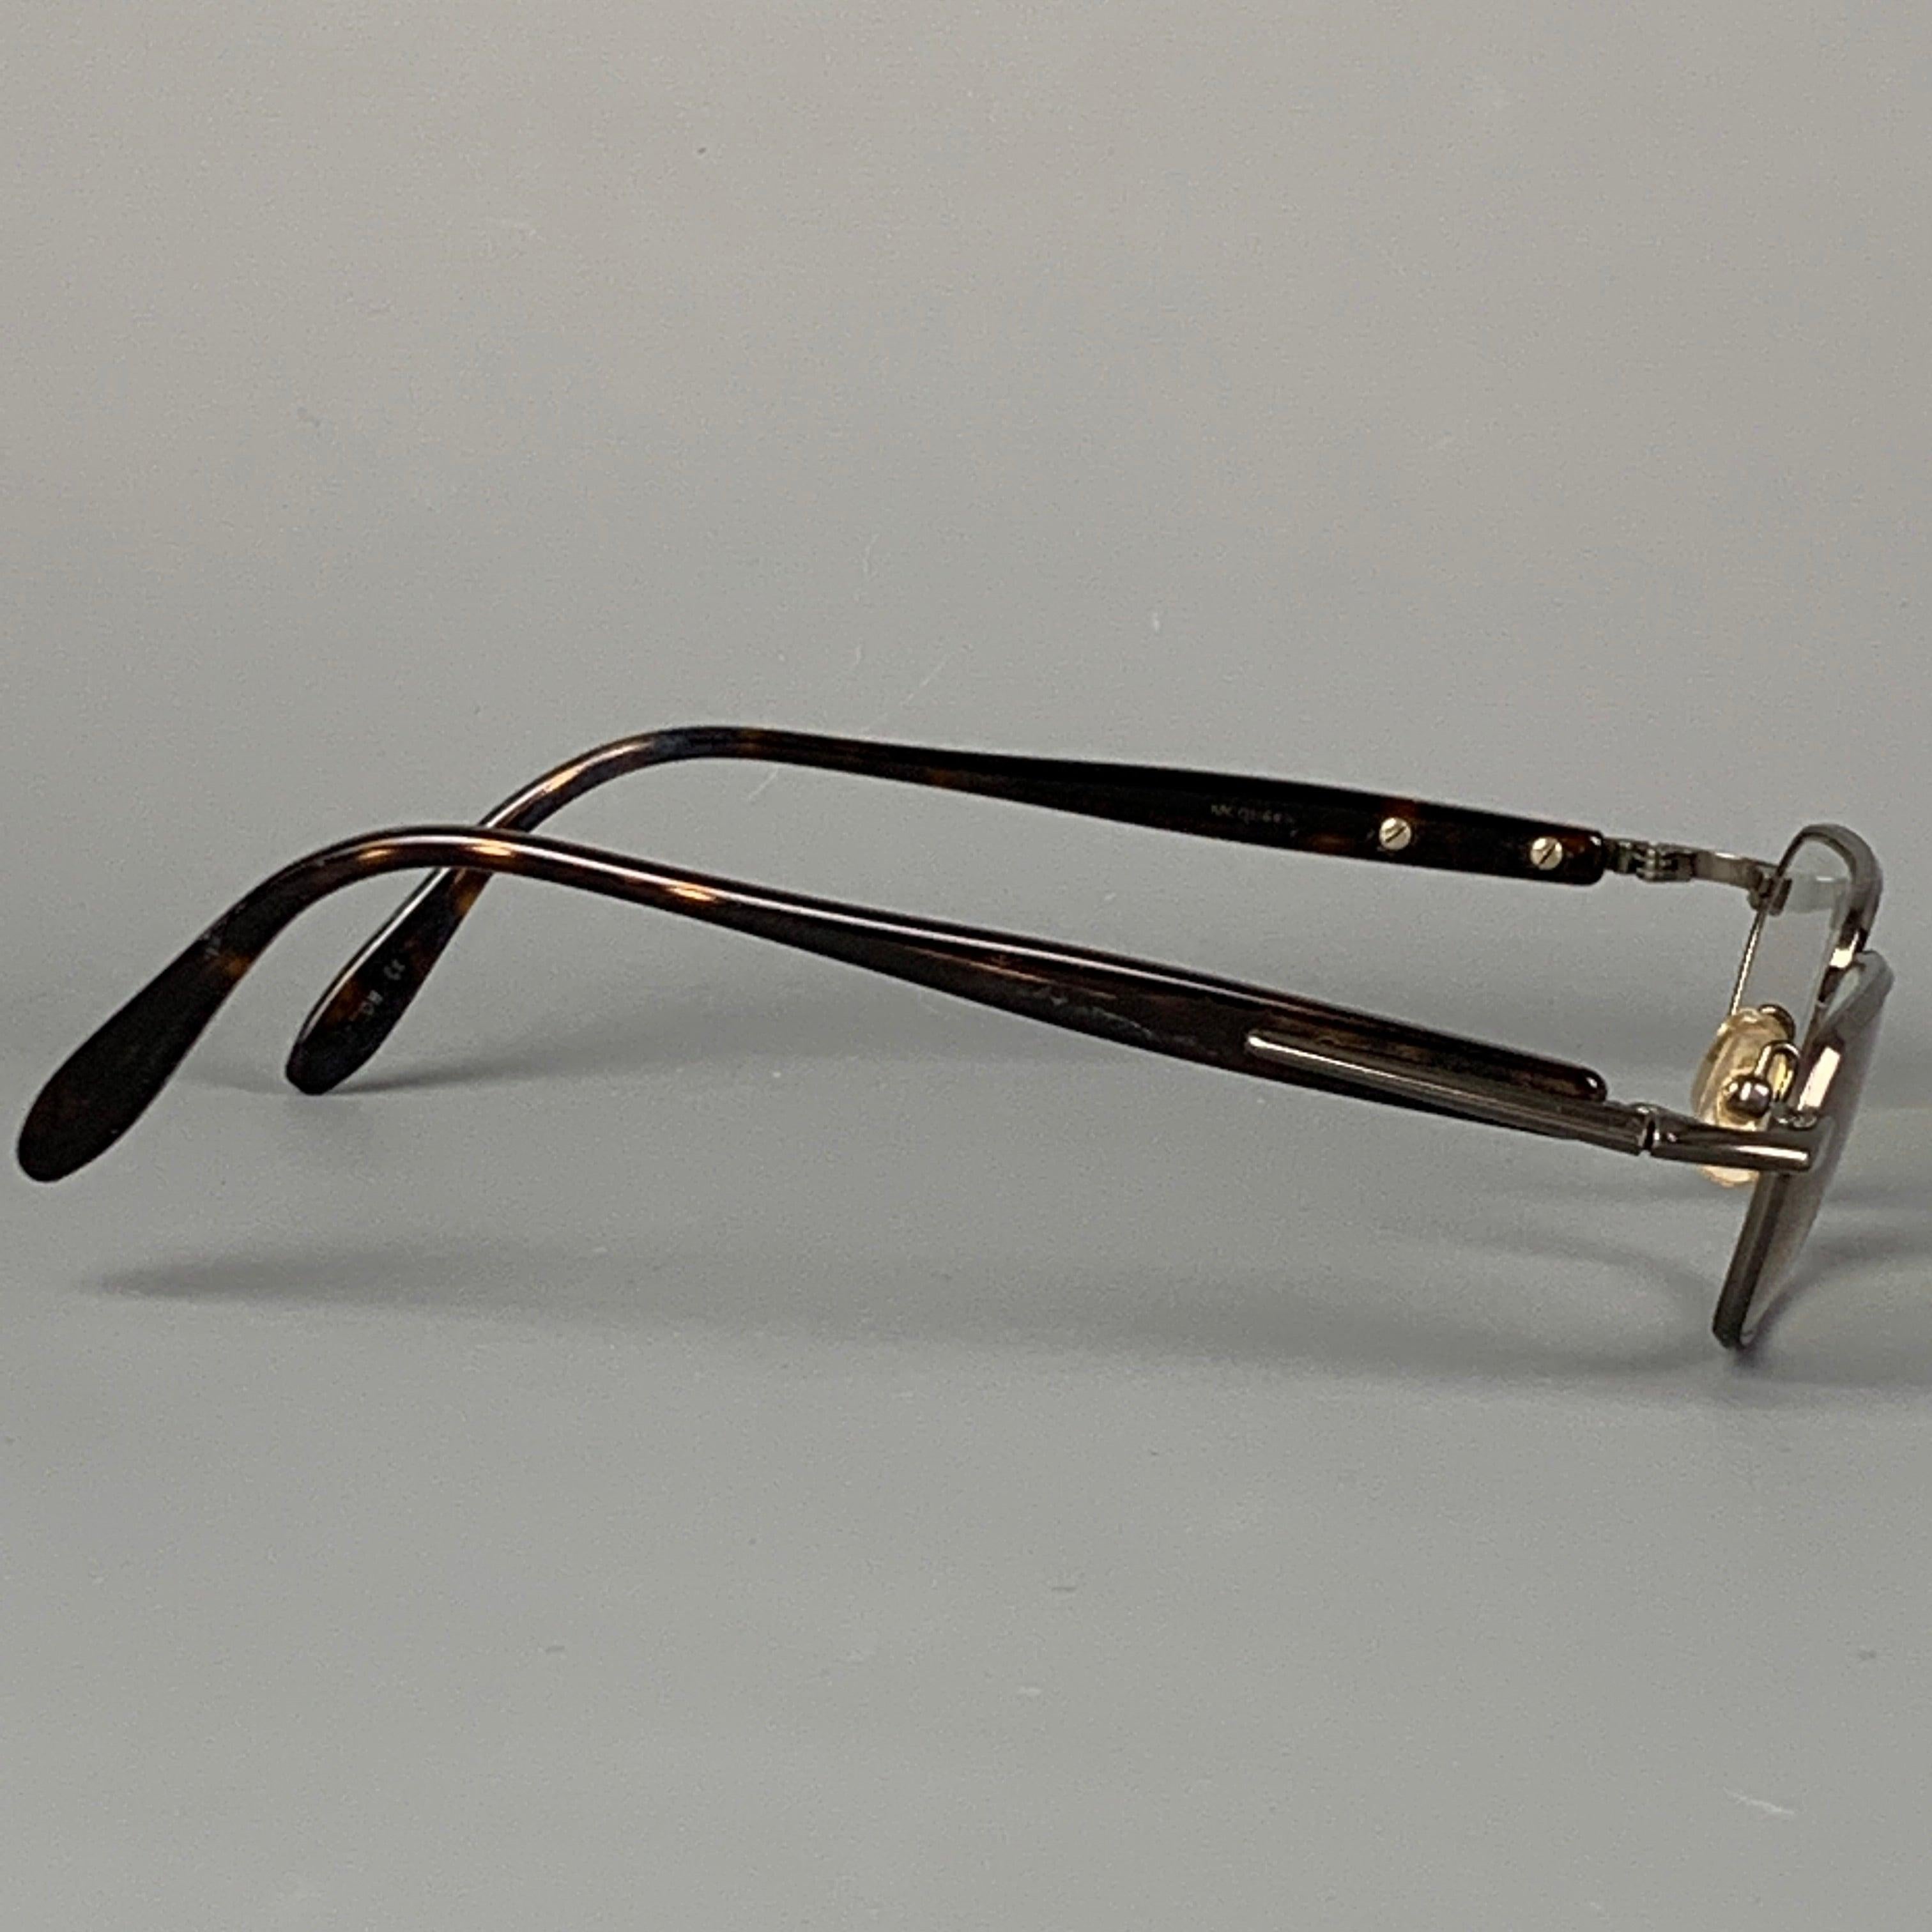 Les lunettes KIESELSTEIN-CORD se présentent en écaille de tortue gunmetal avec des verres correcteurs. Fabriqué au Japon. Bon
Etat d'occasion. 

Mesures : 
  Longueur : 14 cm. Hauteur : 3 pouces 
  
  
 
Référence Sui Generis : 114878
Catégorie :